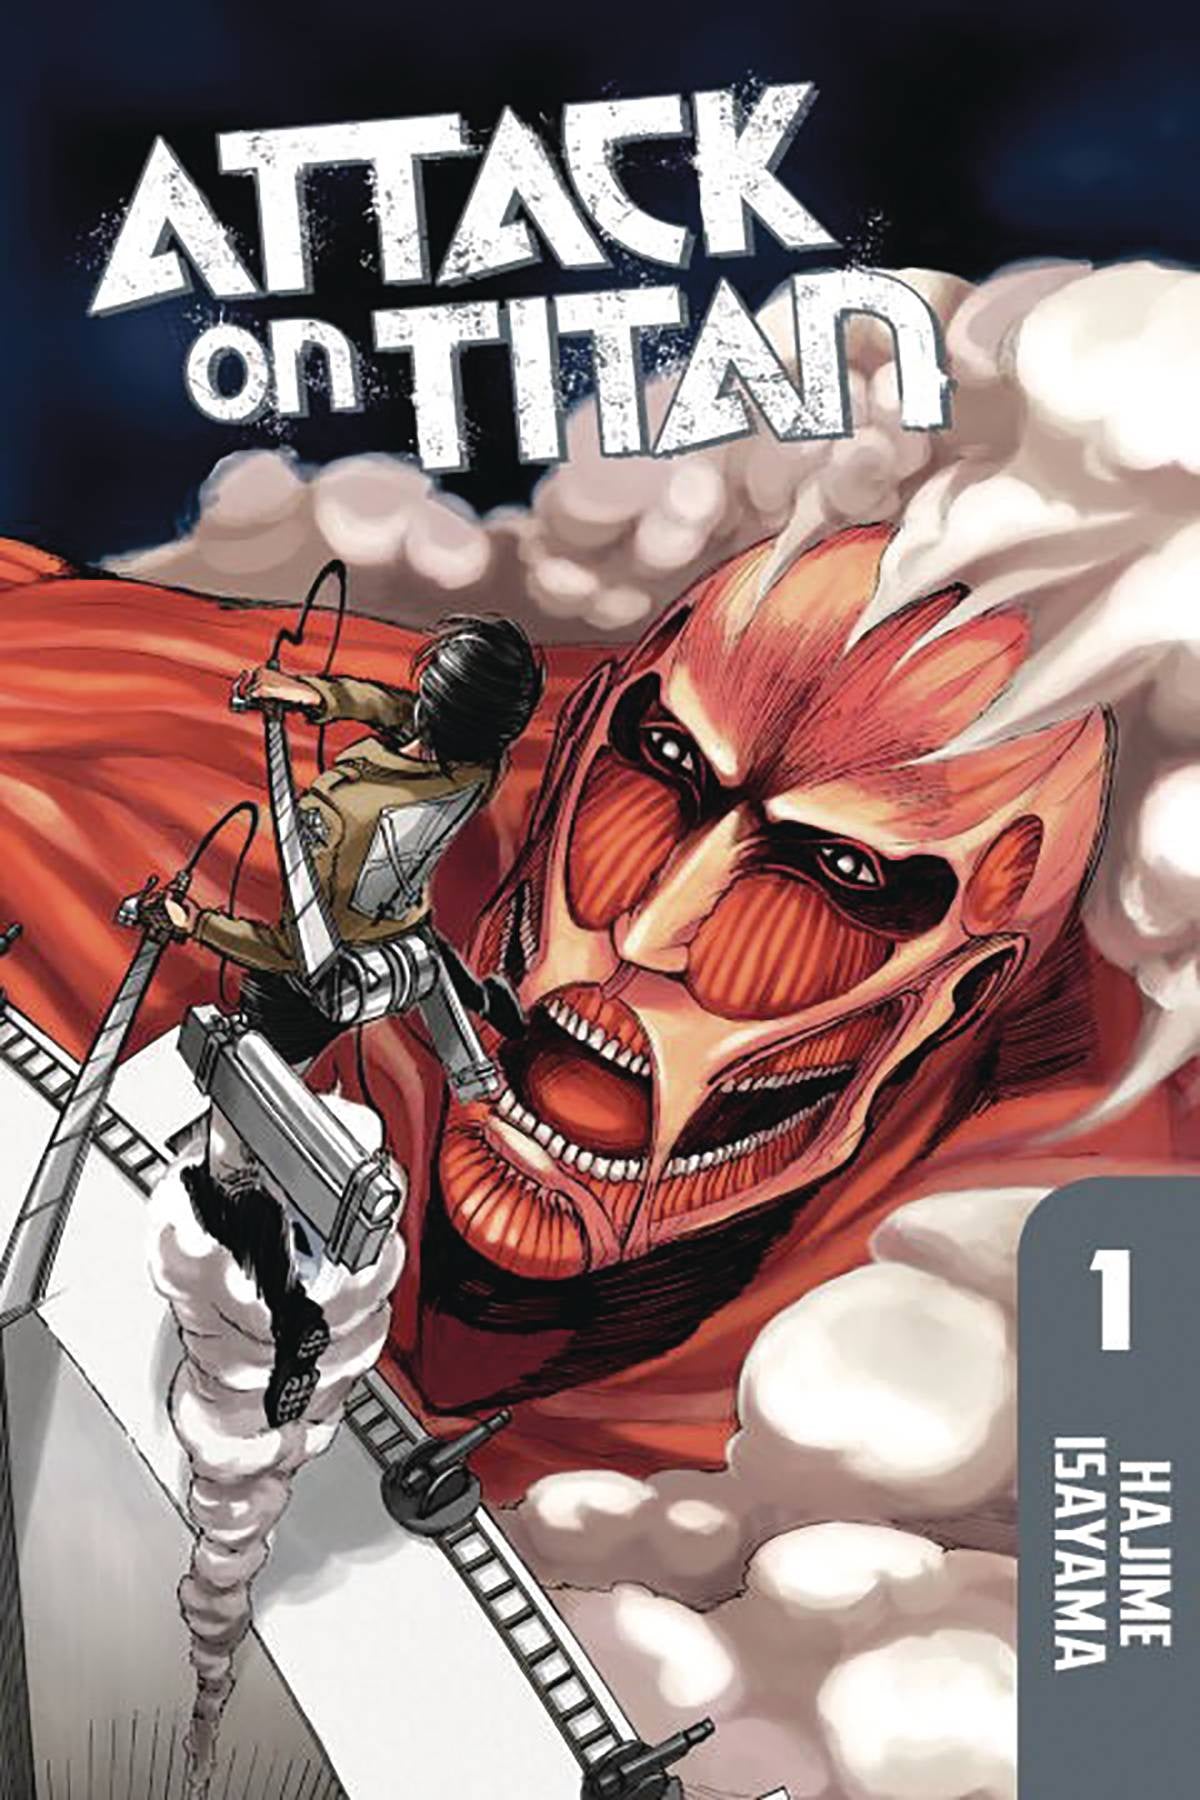 ATTACK ON TITAN OMNIBUS VOLUME 01 VOL 1-3